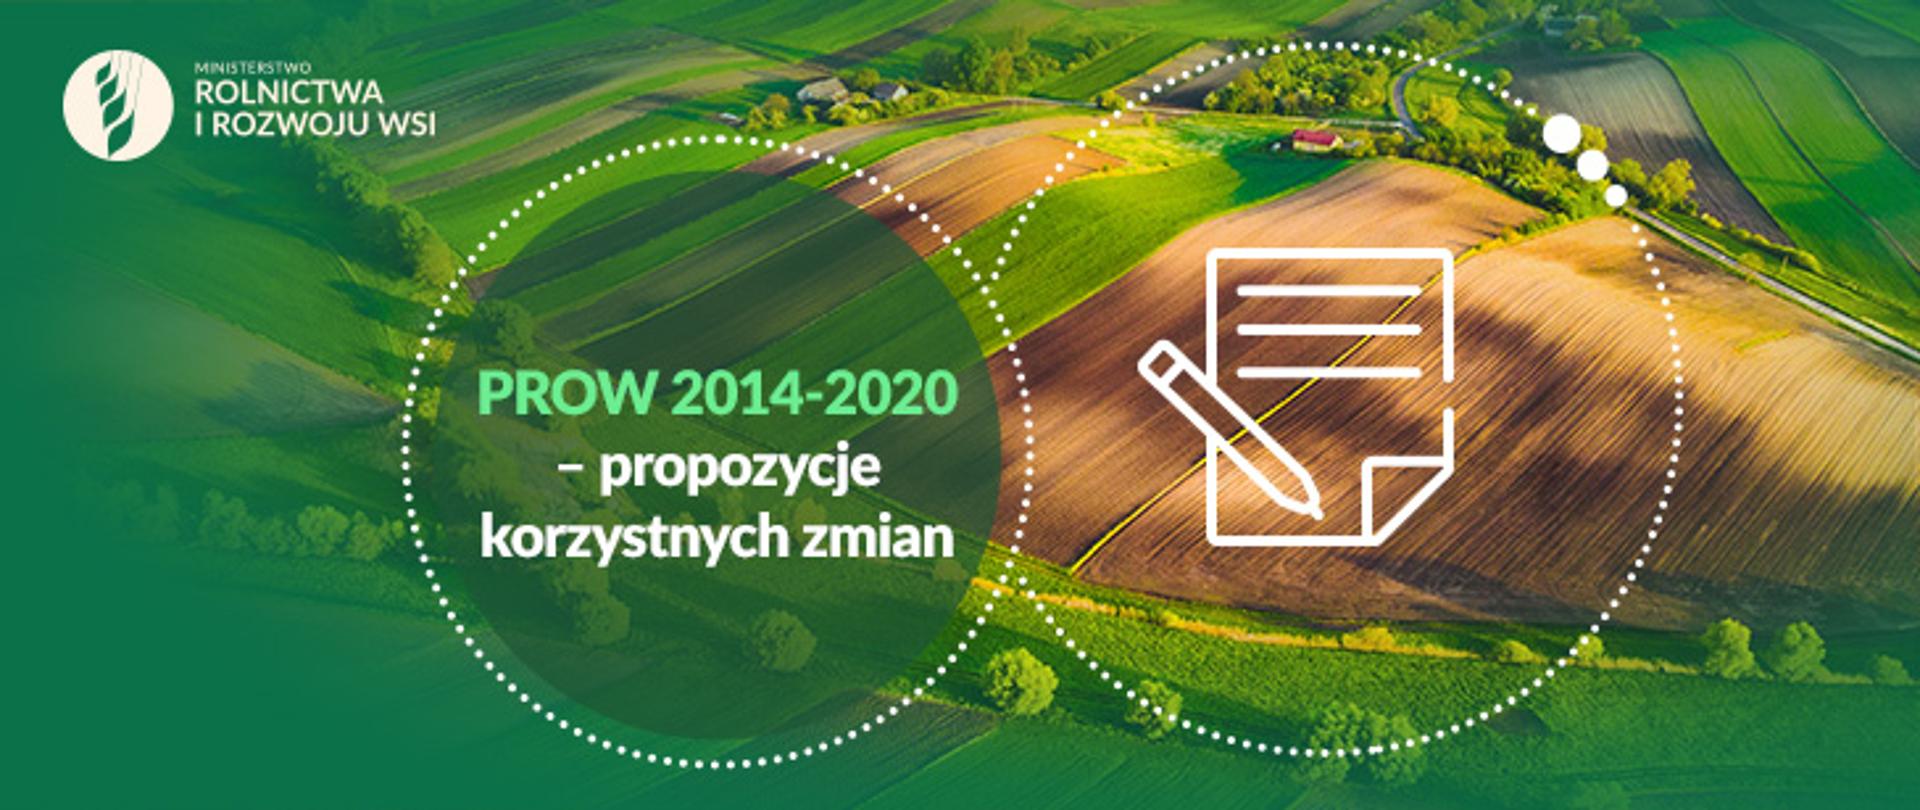 Infografika - PROW 2014-2020 - propozycje korzystnych zmian